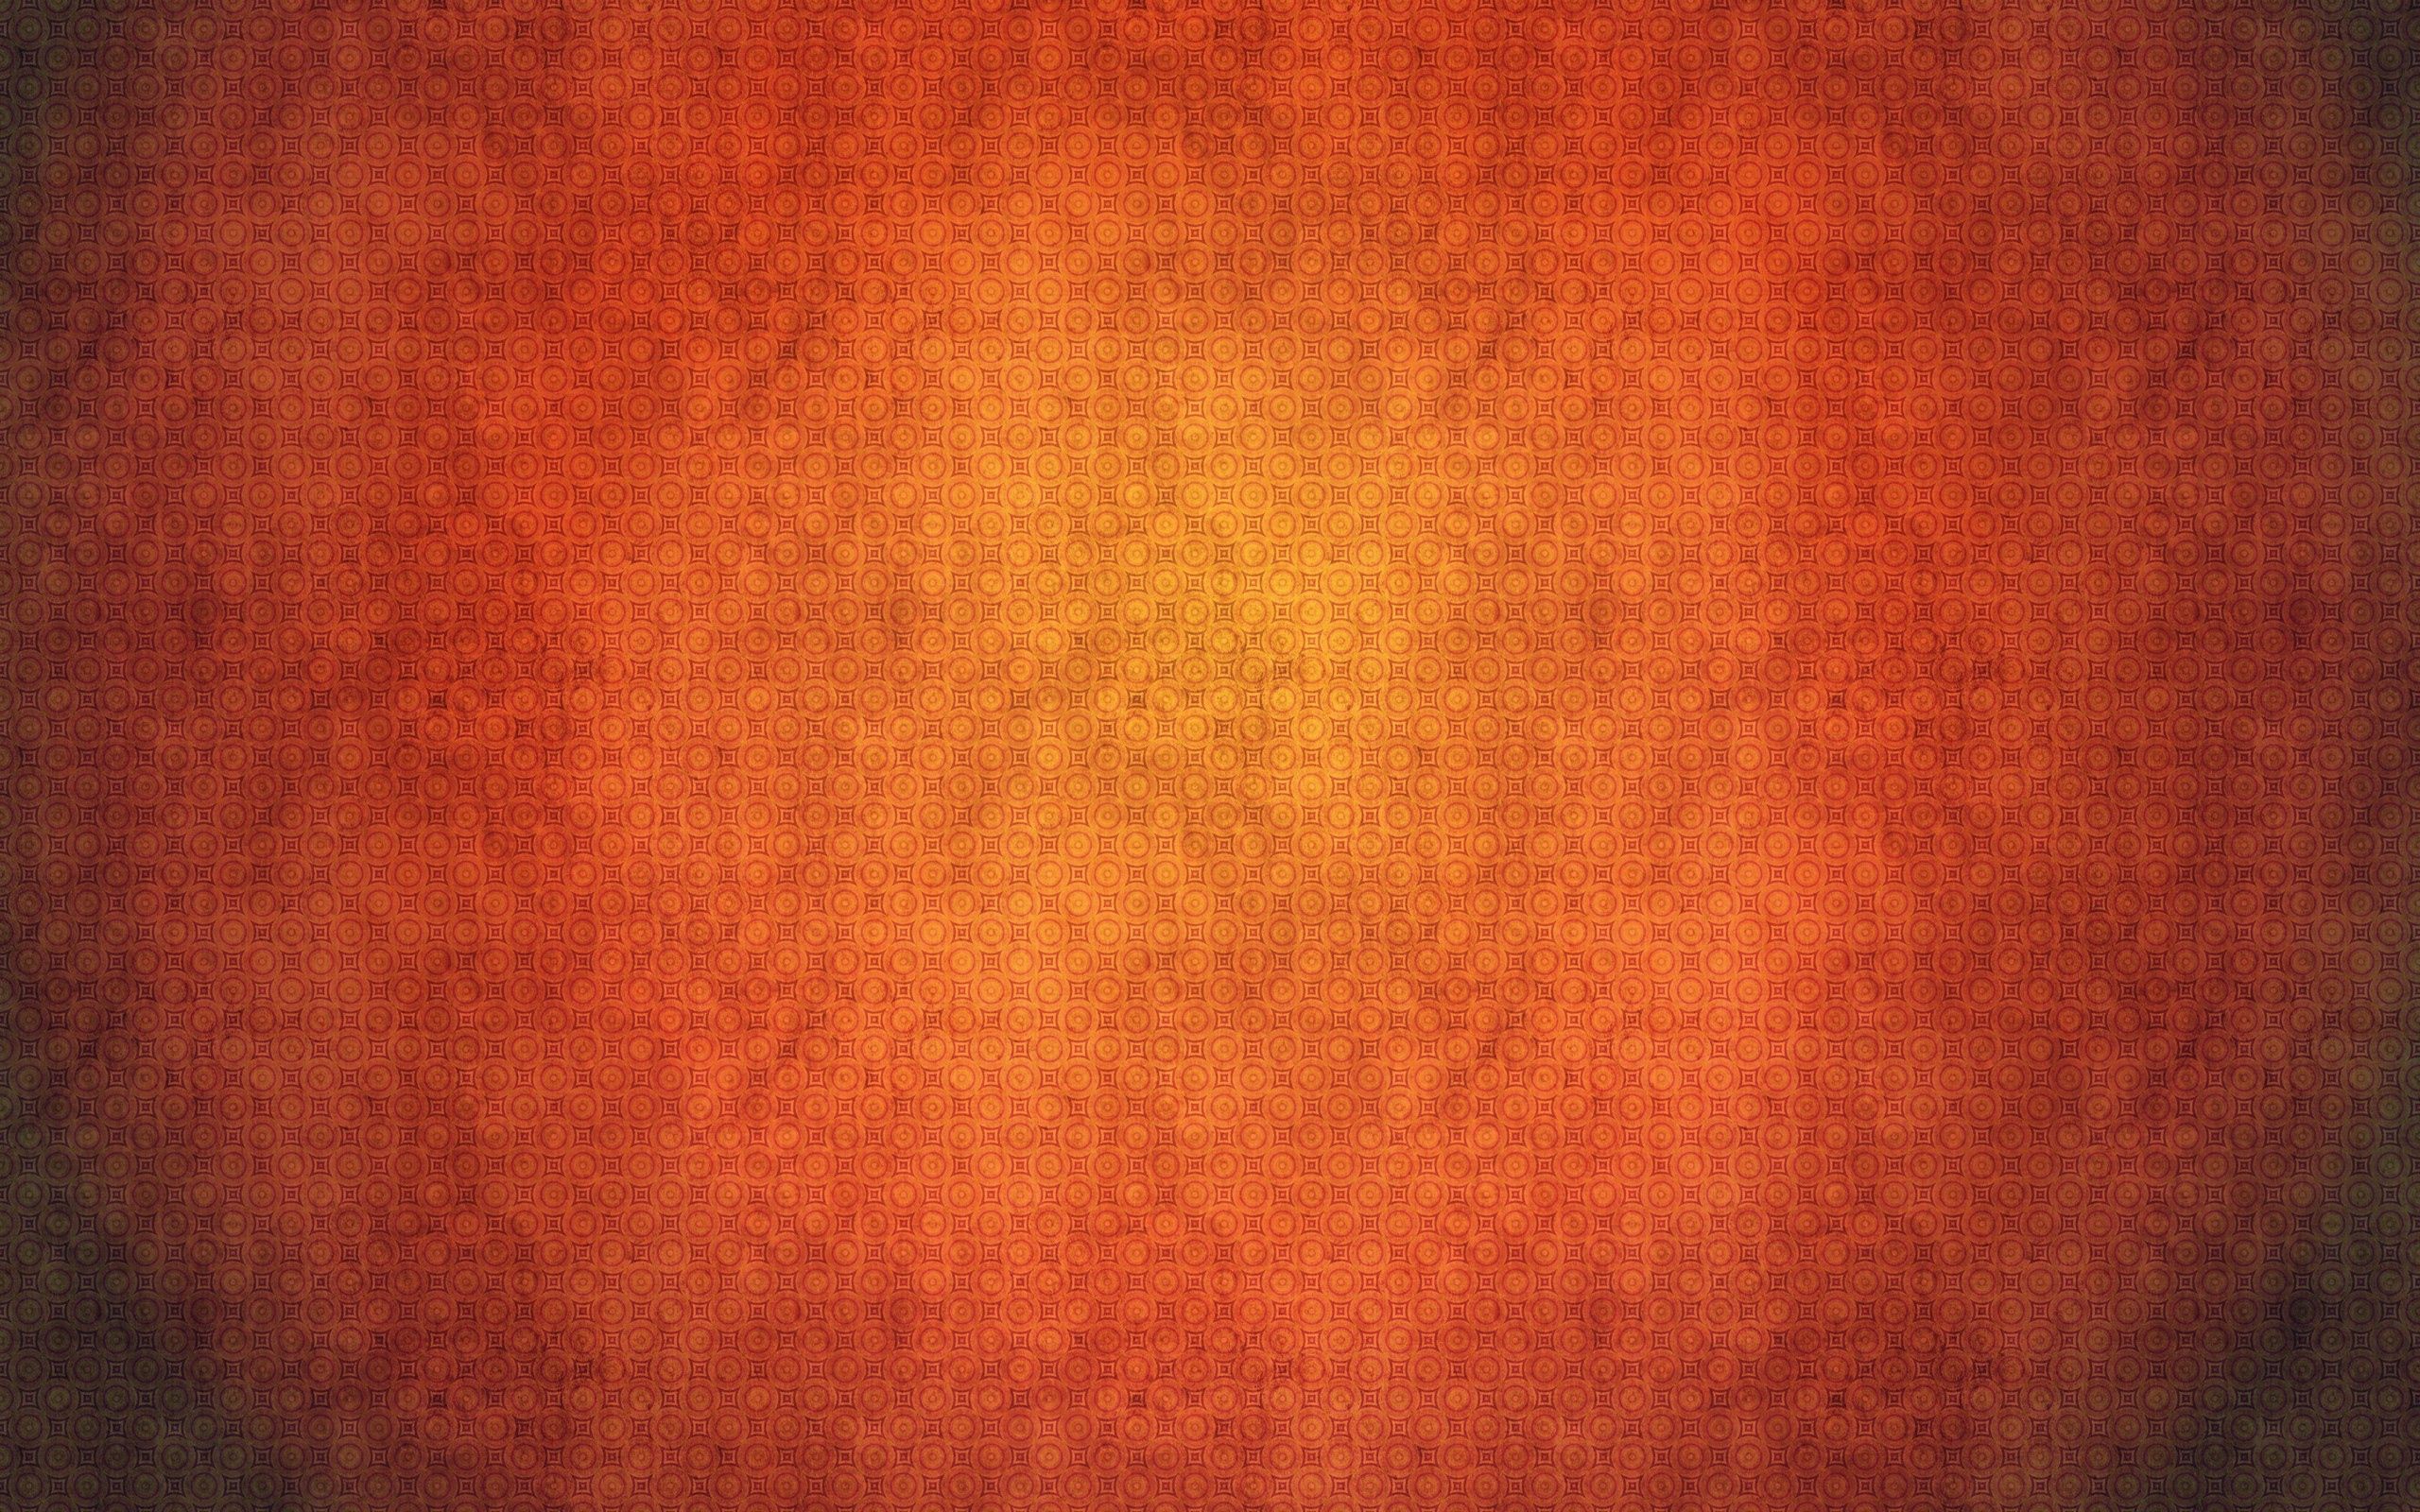 154415 免費下載 橙色 手機壁紙，质地, 橙子, 纹理, 阴影 橙色 圖像和手機屏保